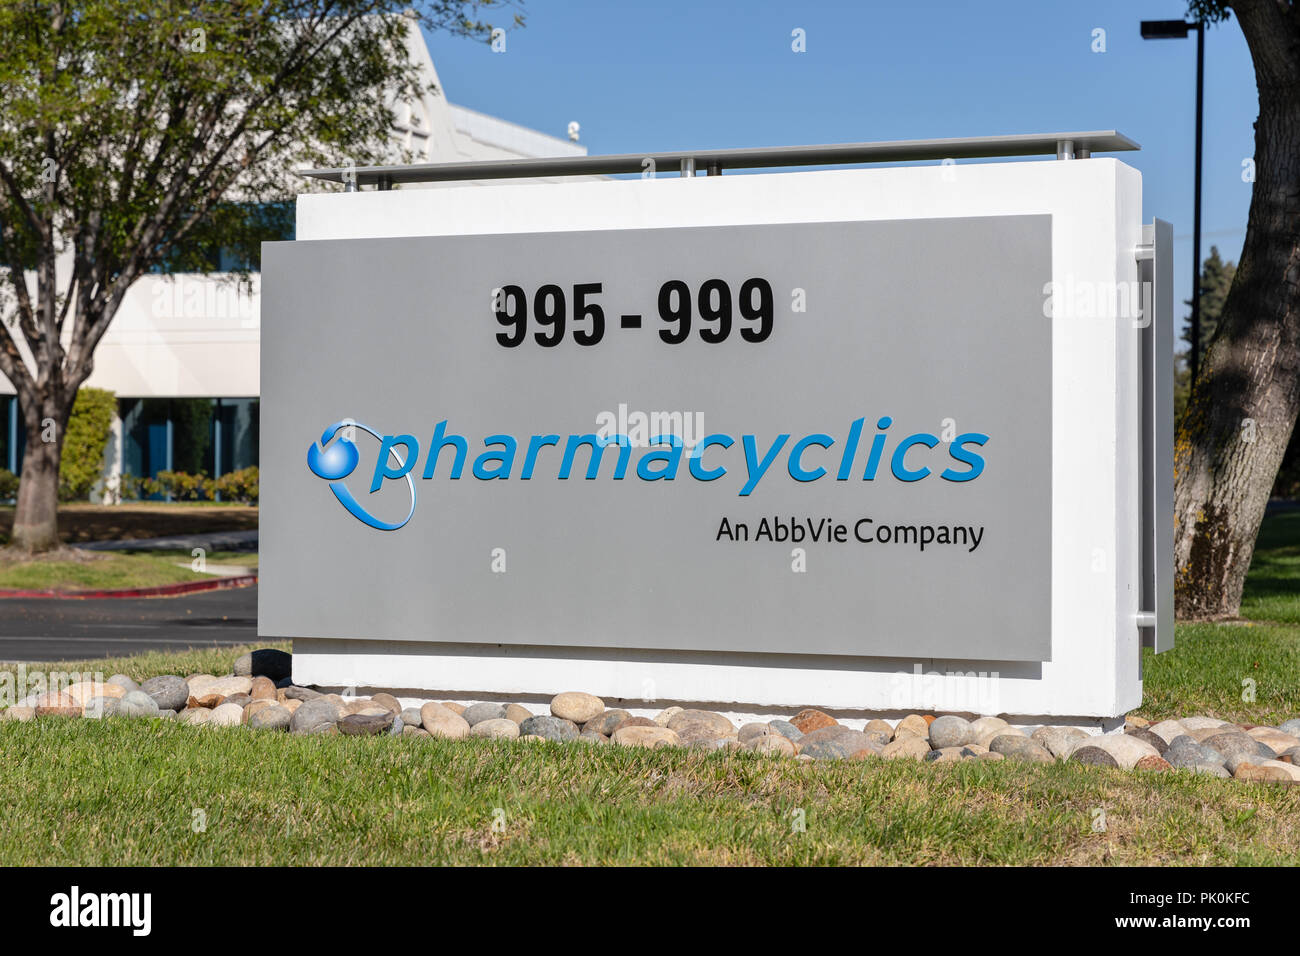 Pharmacyclics – An AbbVie Company; Sunnyvale, California Stock Photo